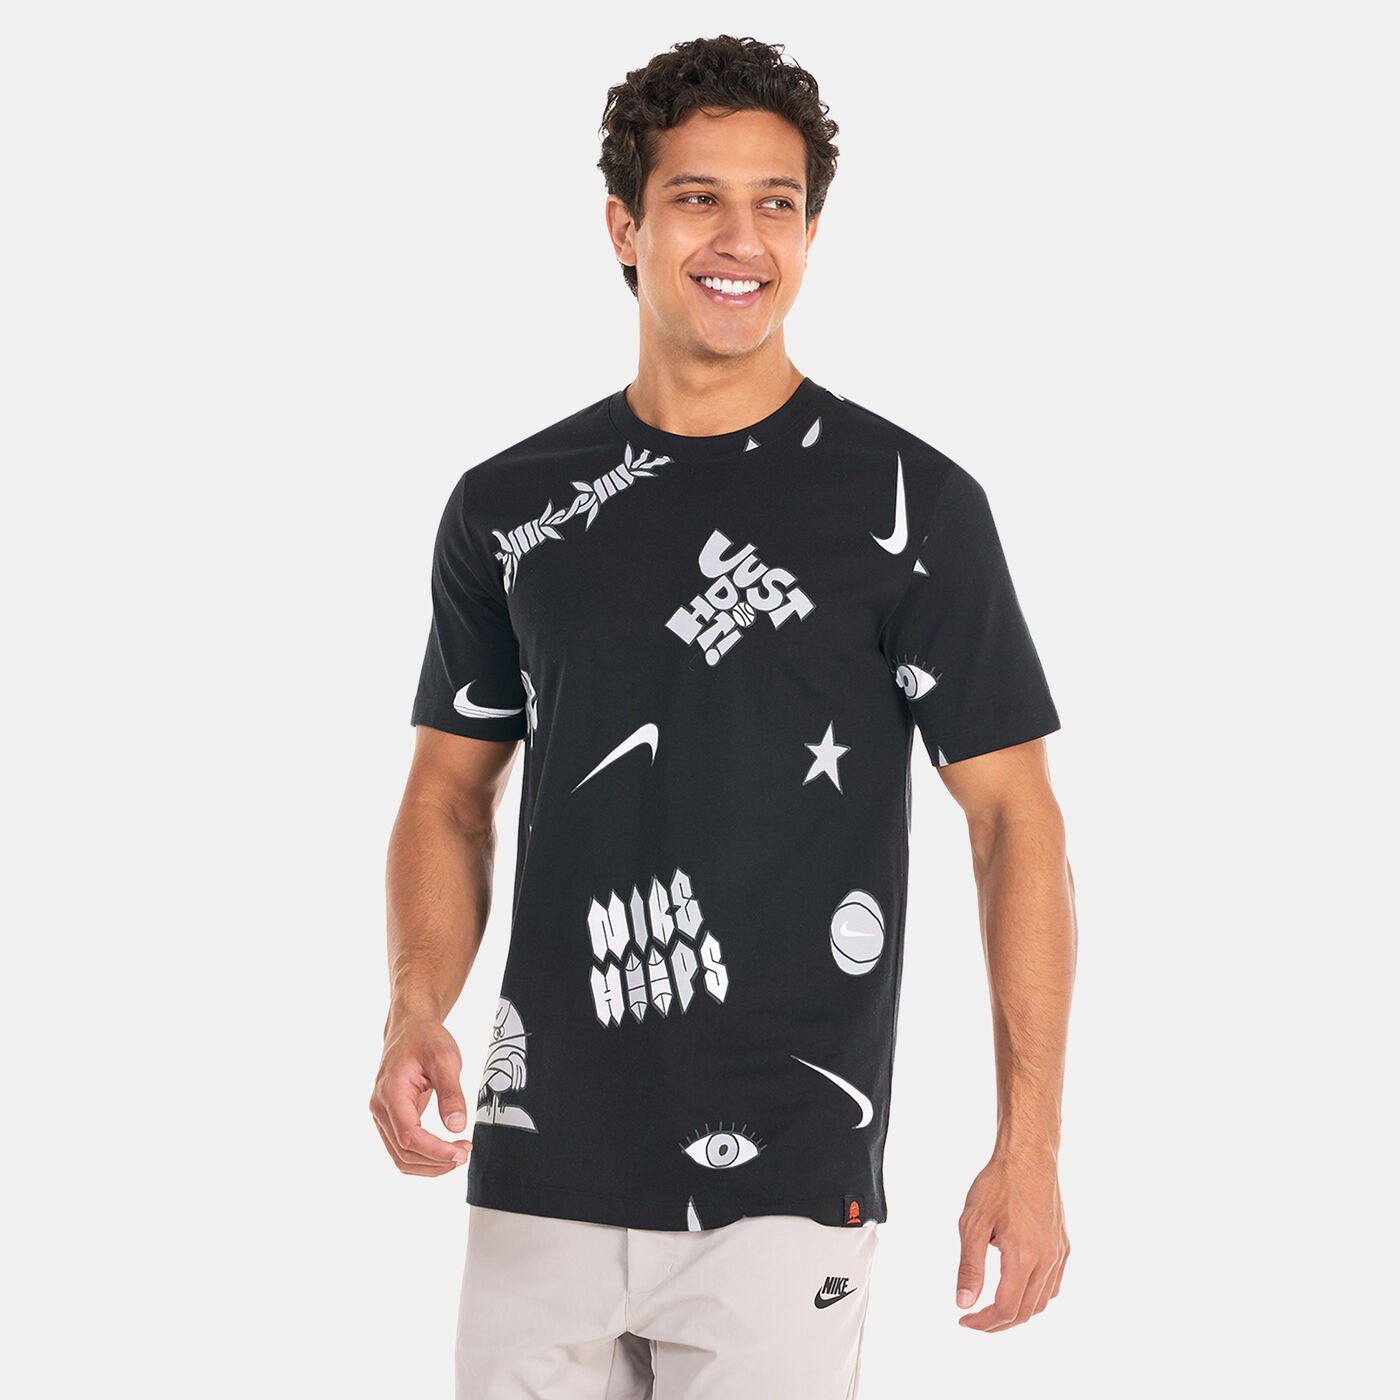 Men's Basketball T-Shirt